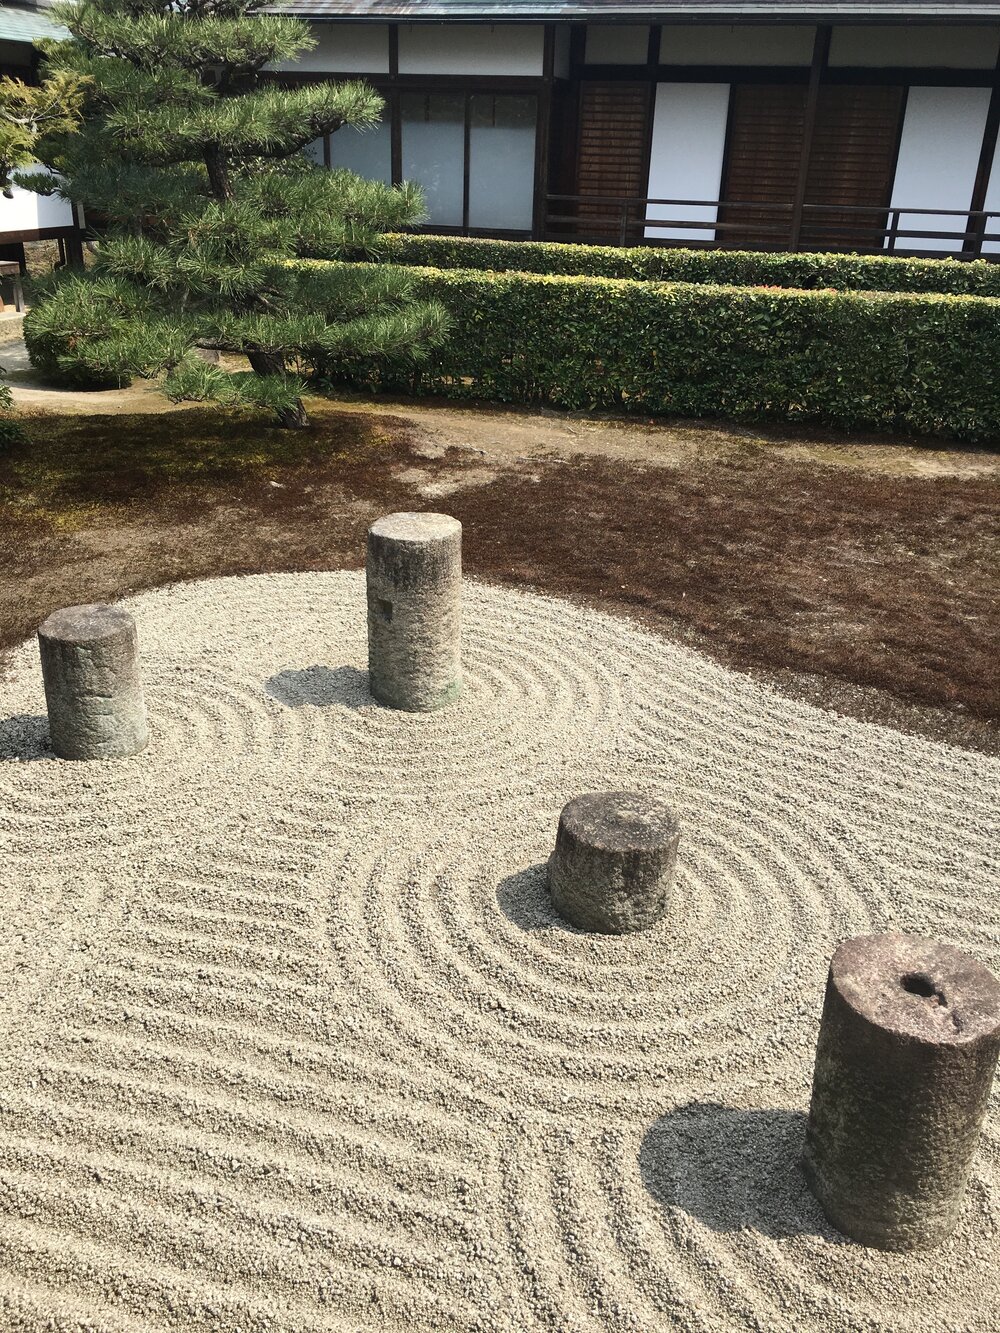 The raked gravel in the Tofukuji Zen Garden